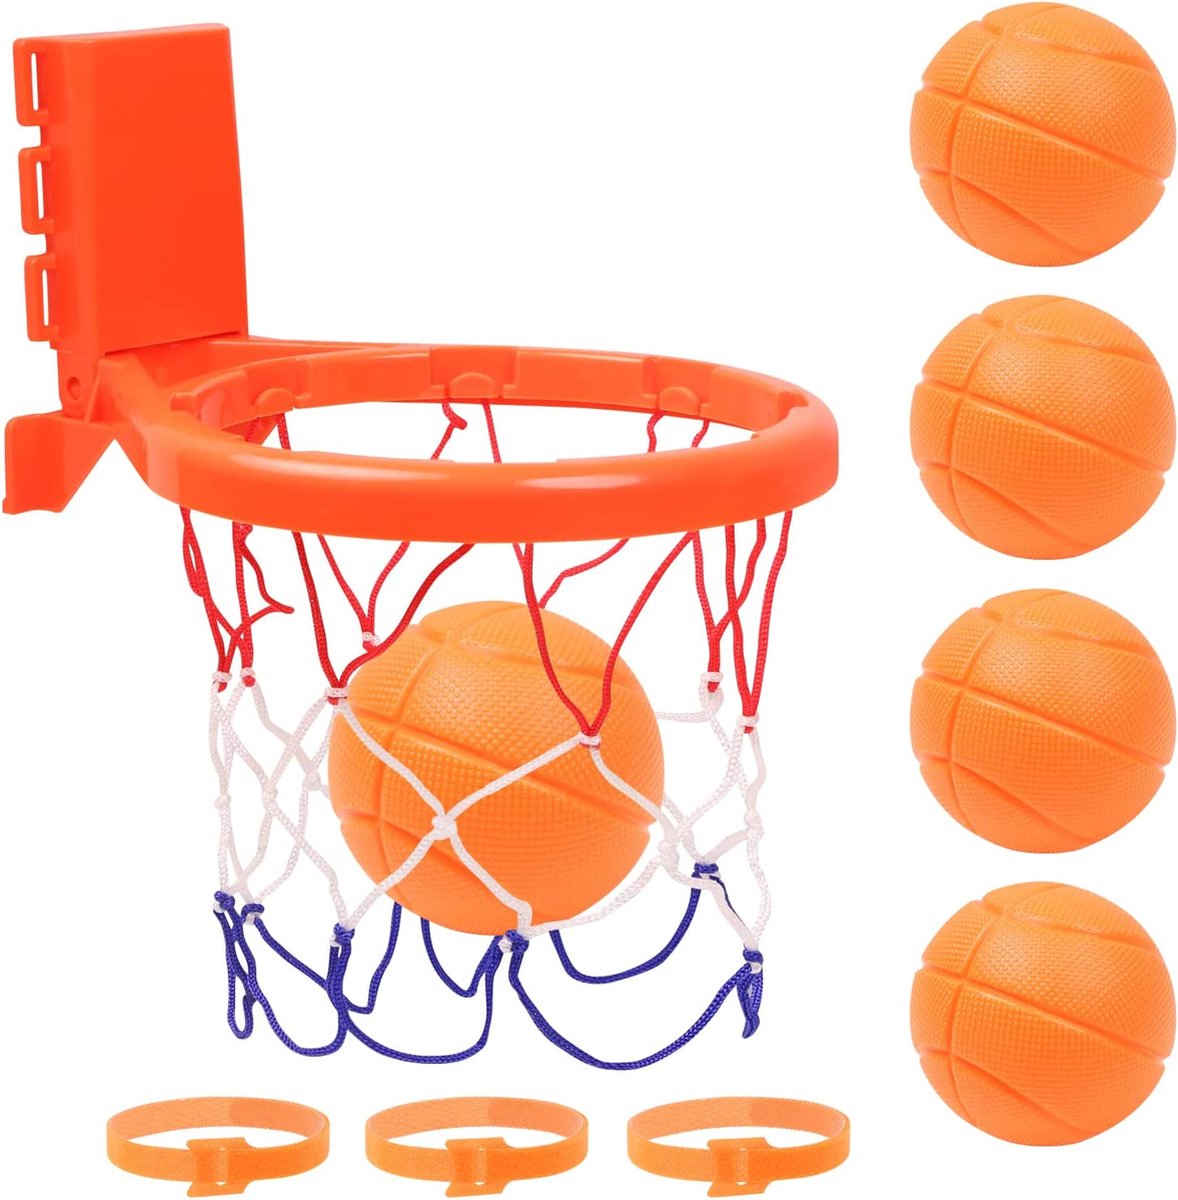 Flightmode-Vicloon Mini Basketbalkorf, Kinderen Basketbal Hoepel Set, met 5 Ballen, Kinderen Basketbal Hoepel Set voor Slaapkamer woonkamer Badkamer Waterspeelgoed